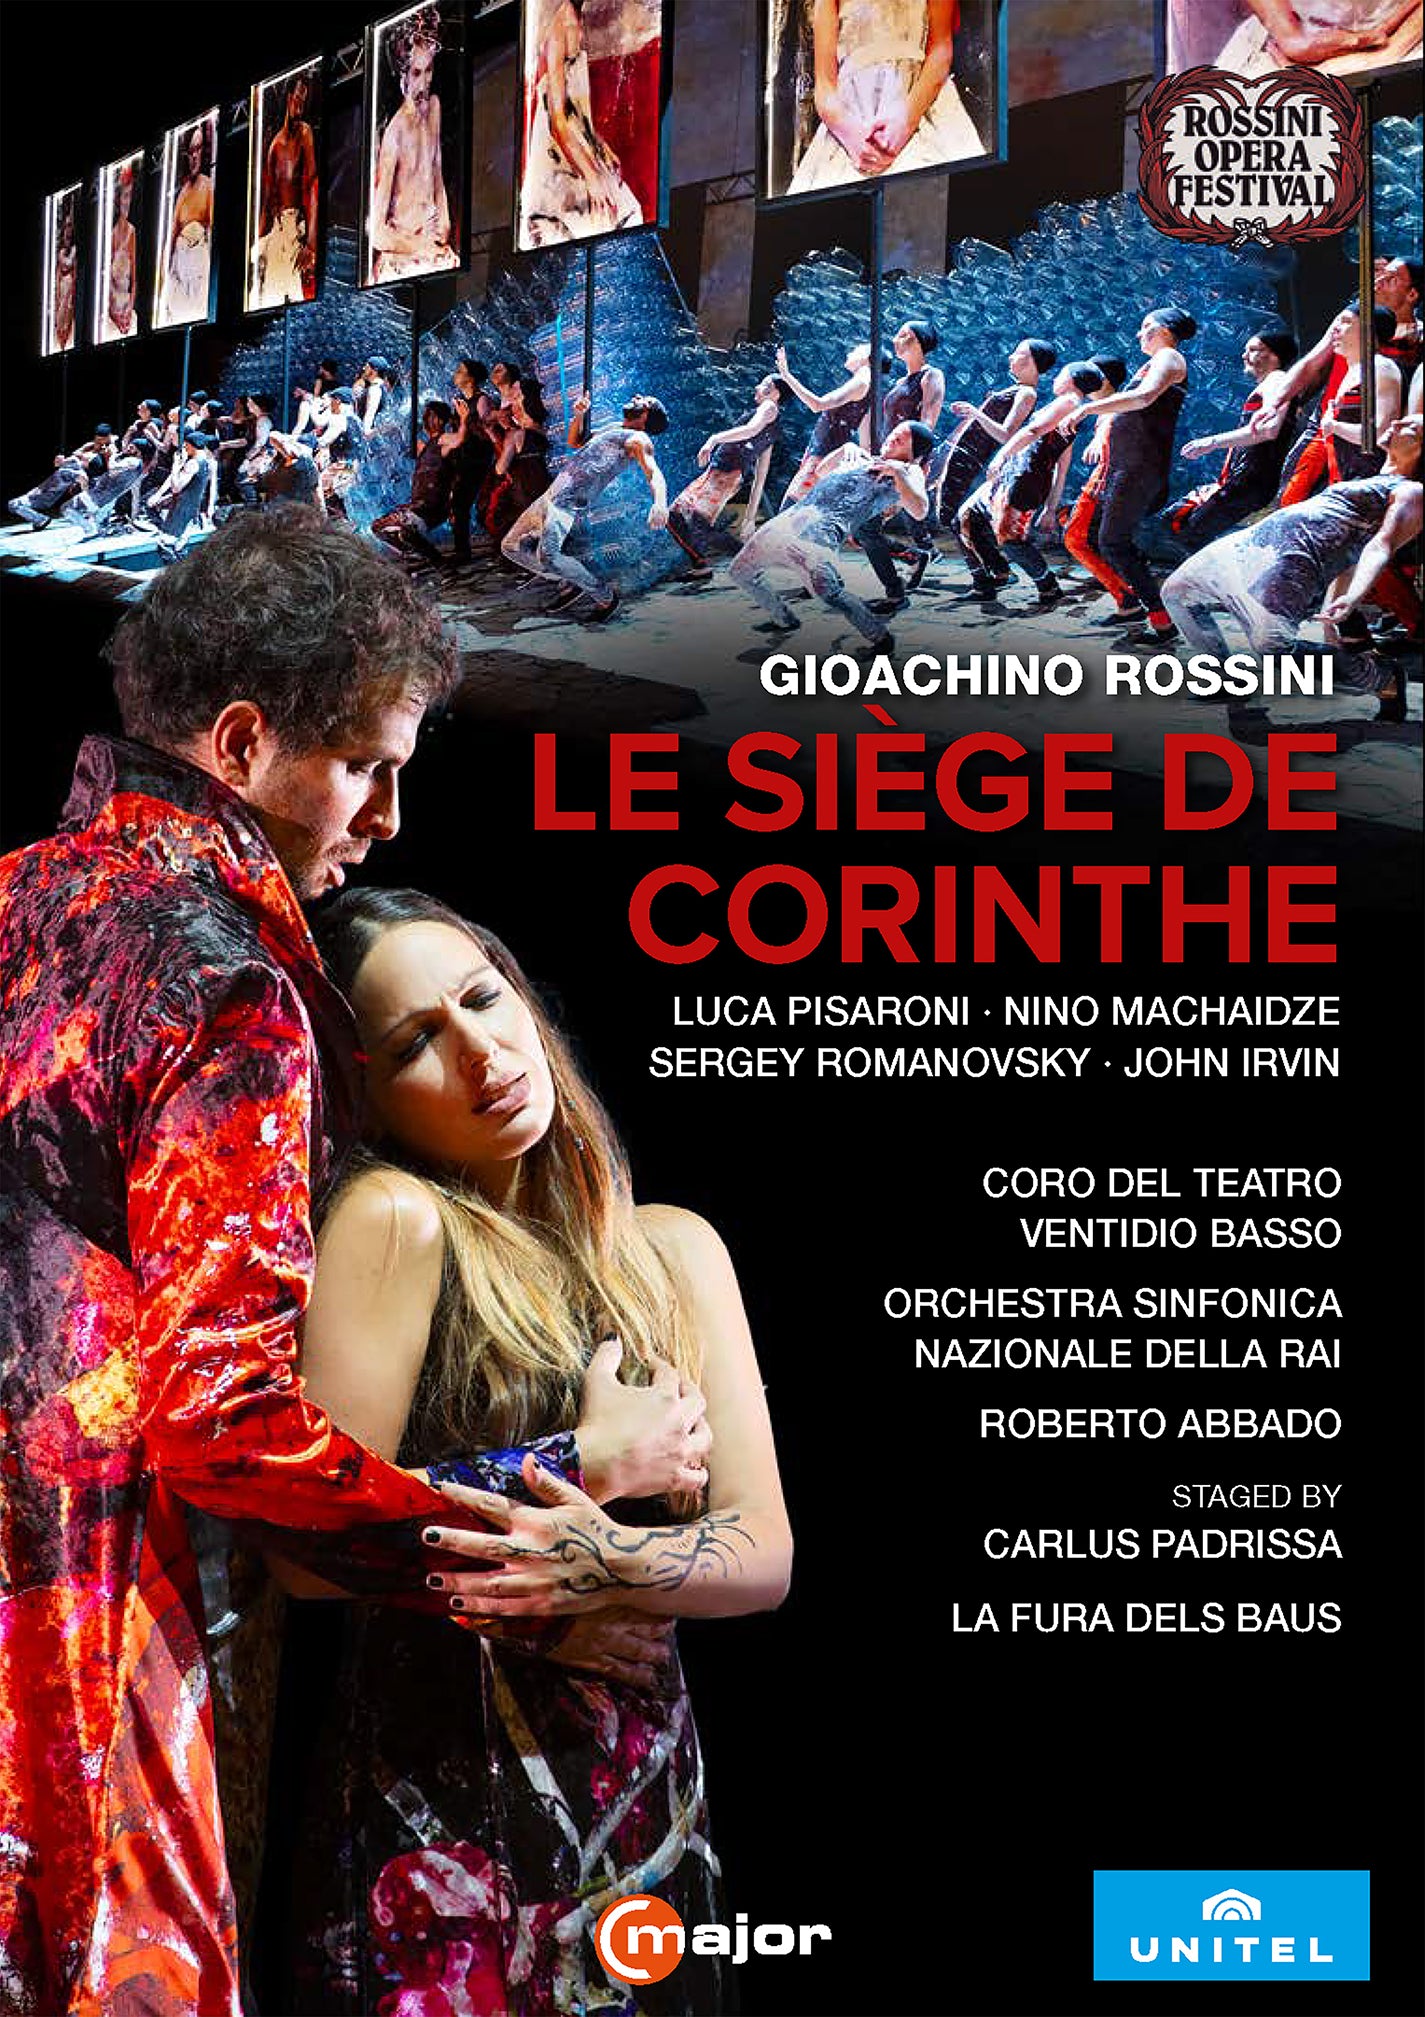 Rossini: Le Siege de Corinthe